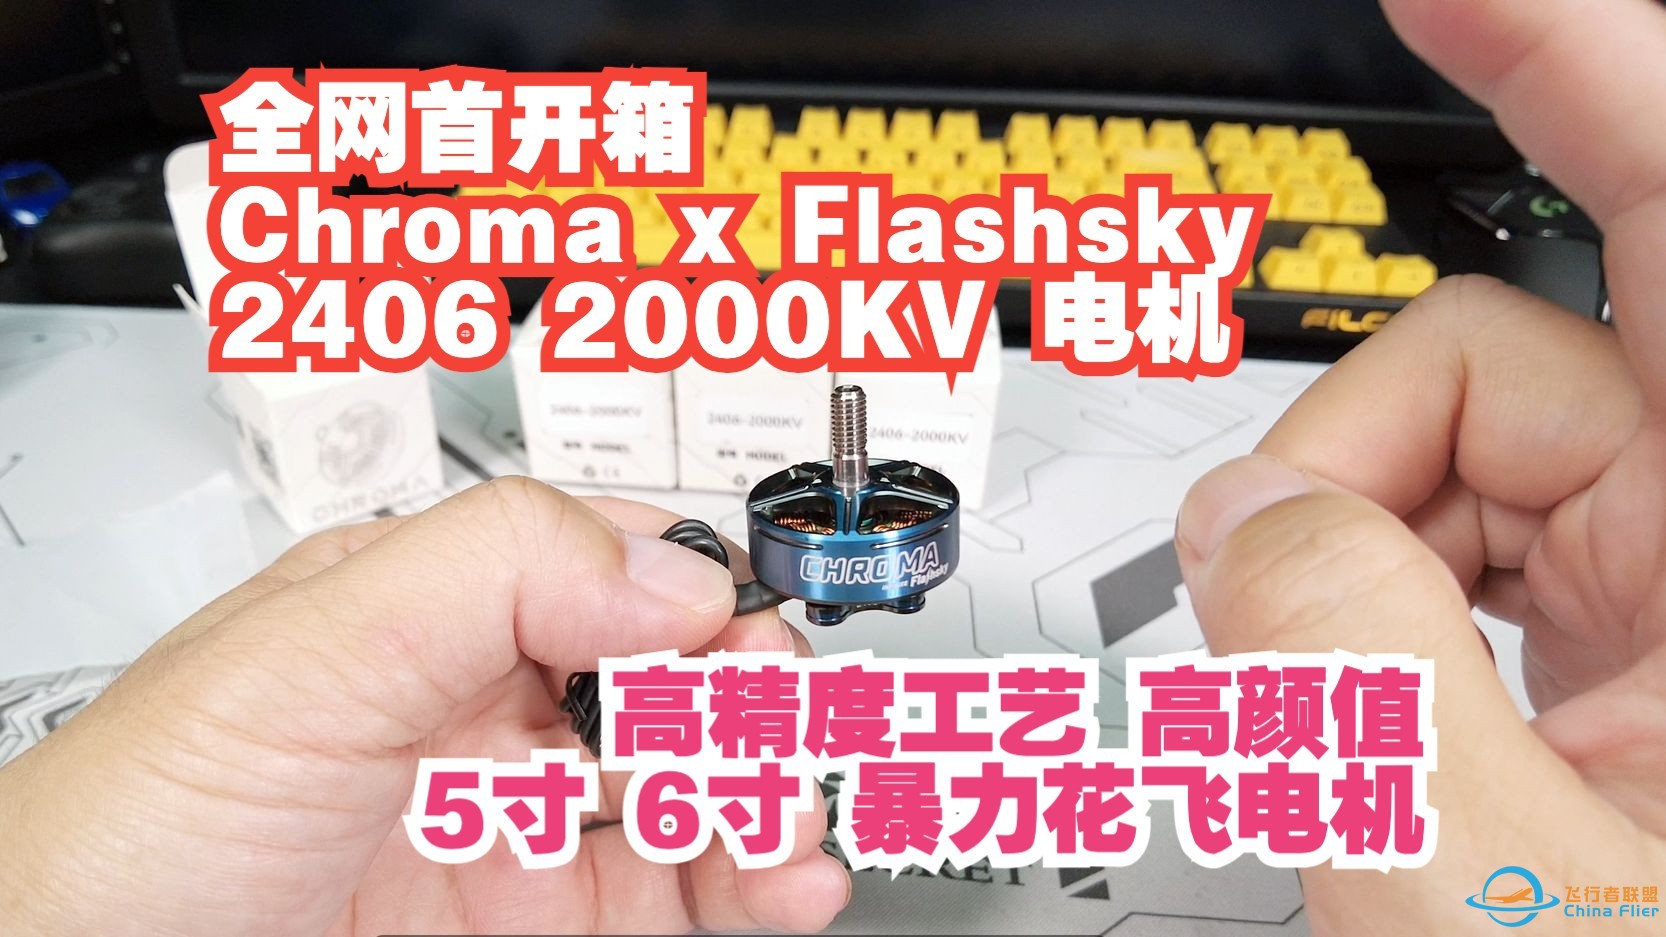 全网首开箱 Chroma x Flashsky 2406电机 高精度工艺高颜值 5寸6寸穿越机暴力花飞电机-1.jpg